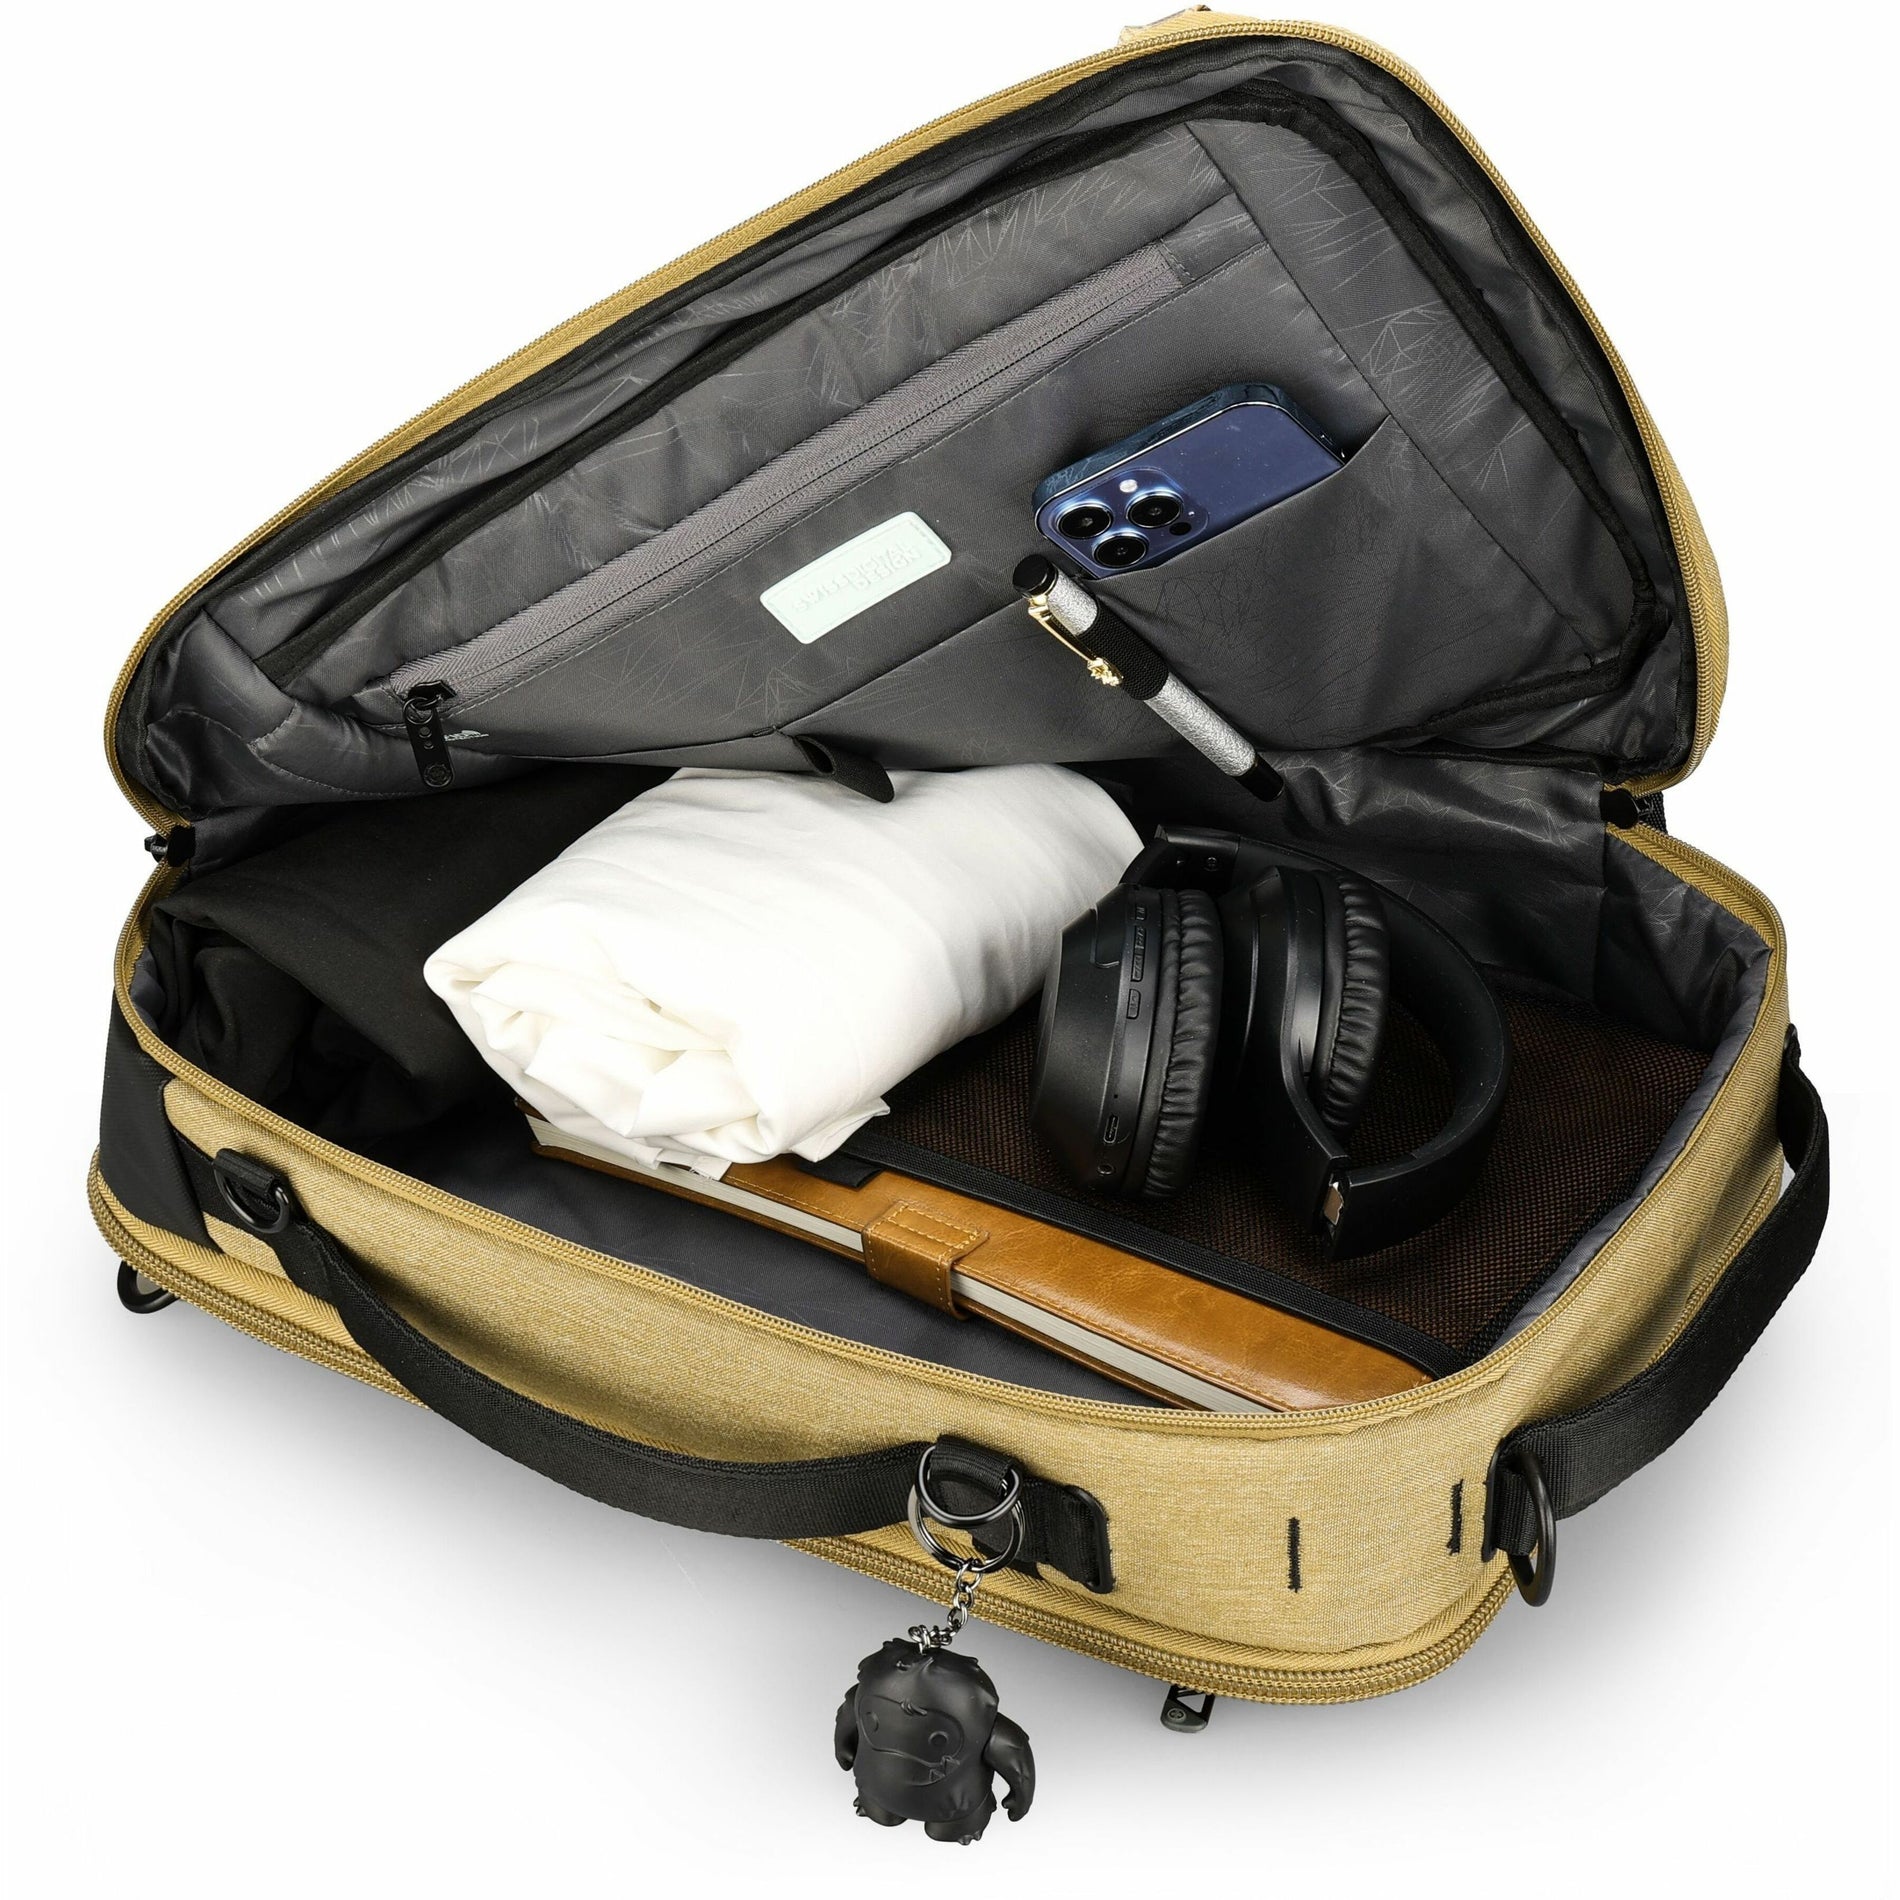 Swissdigital Design (SD164974) Carrying Cases (SD1649-74)